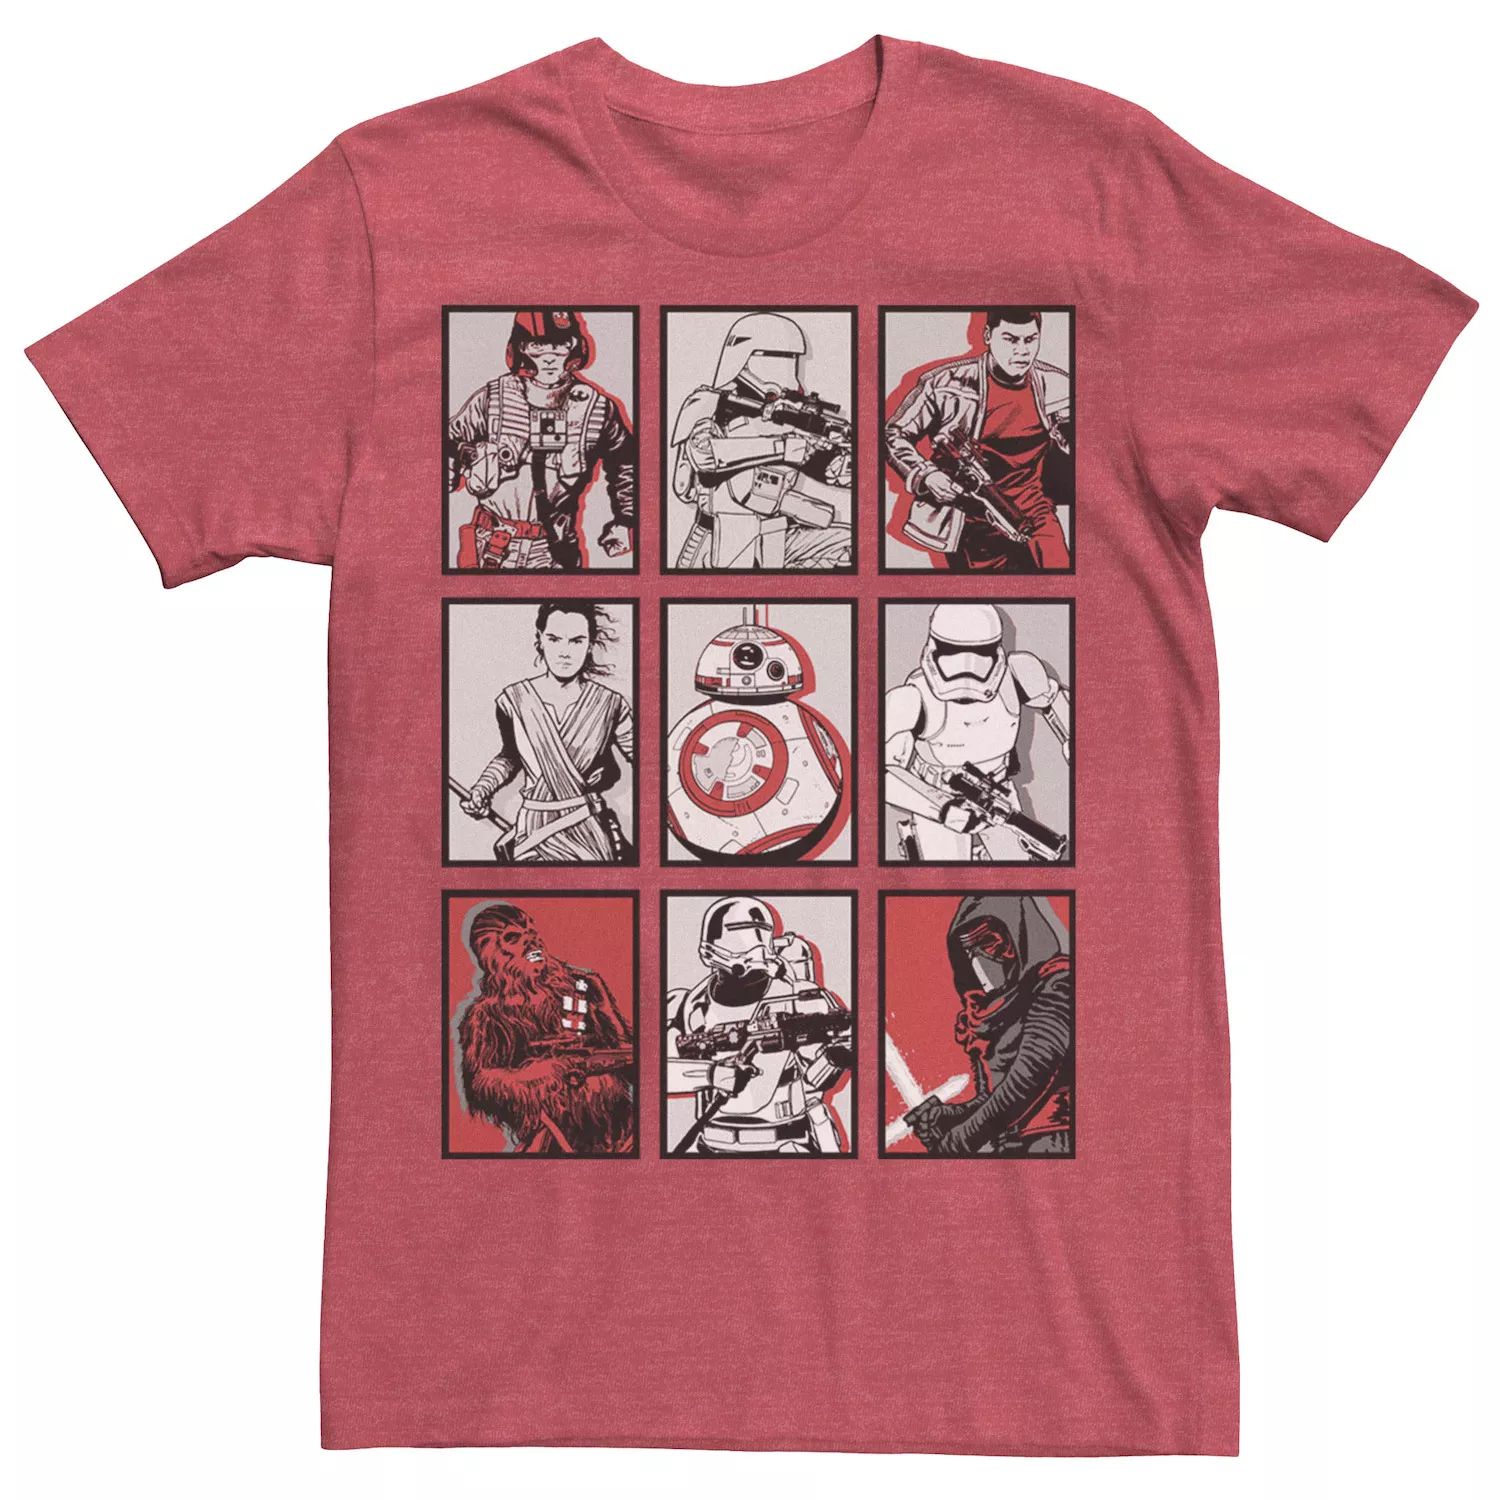 Мужская футболка с графическим плакатом и плакатом «Пробуждение Силы» Star Wars